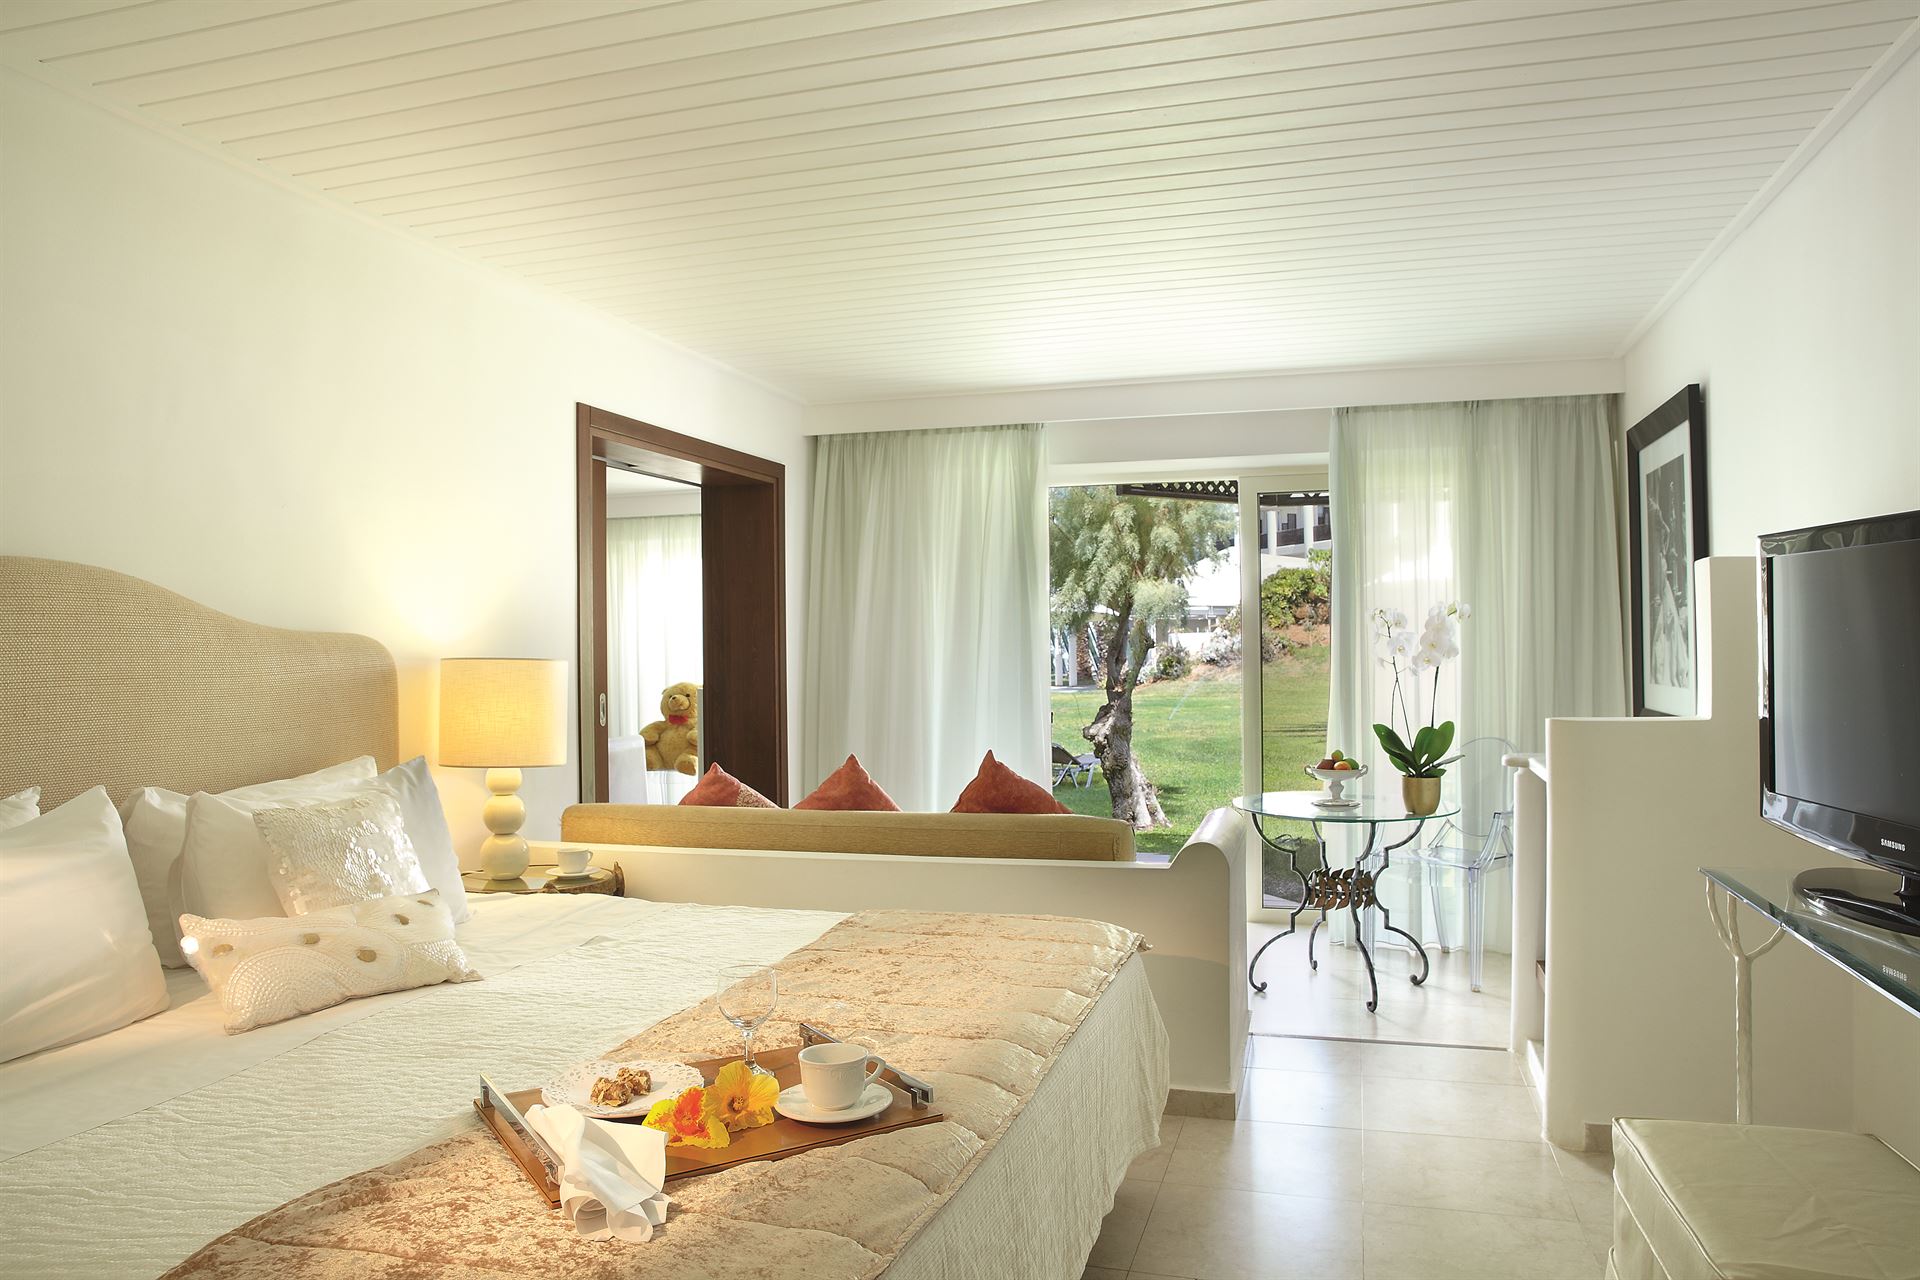 Grecotel Creta Palace Luxury Resort: Palace Family Bungalow Suite